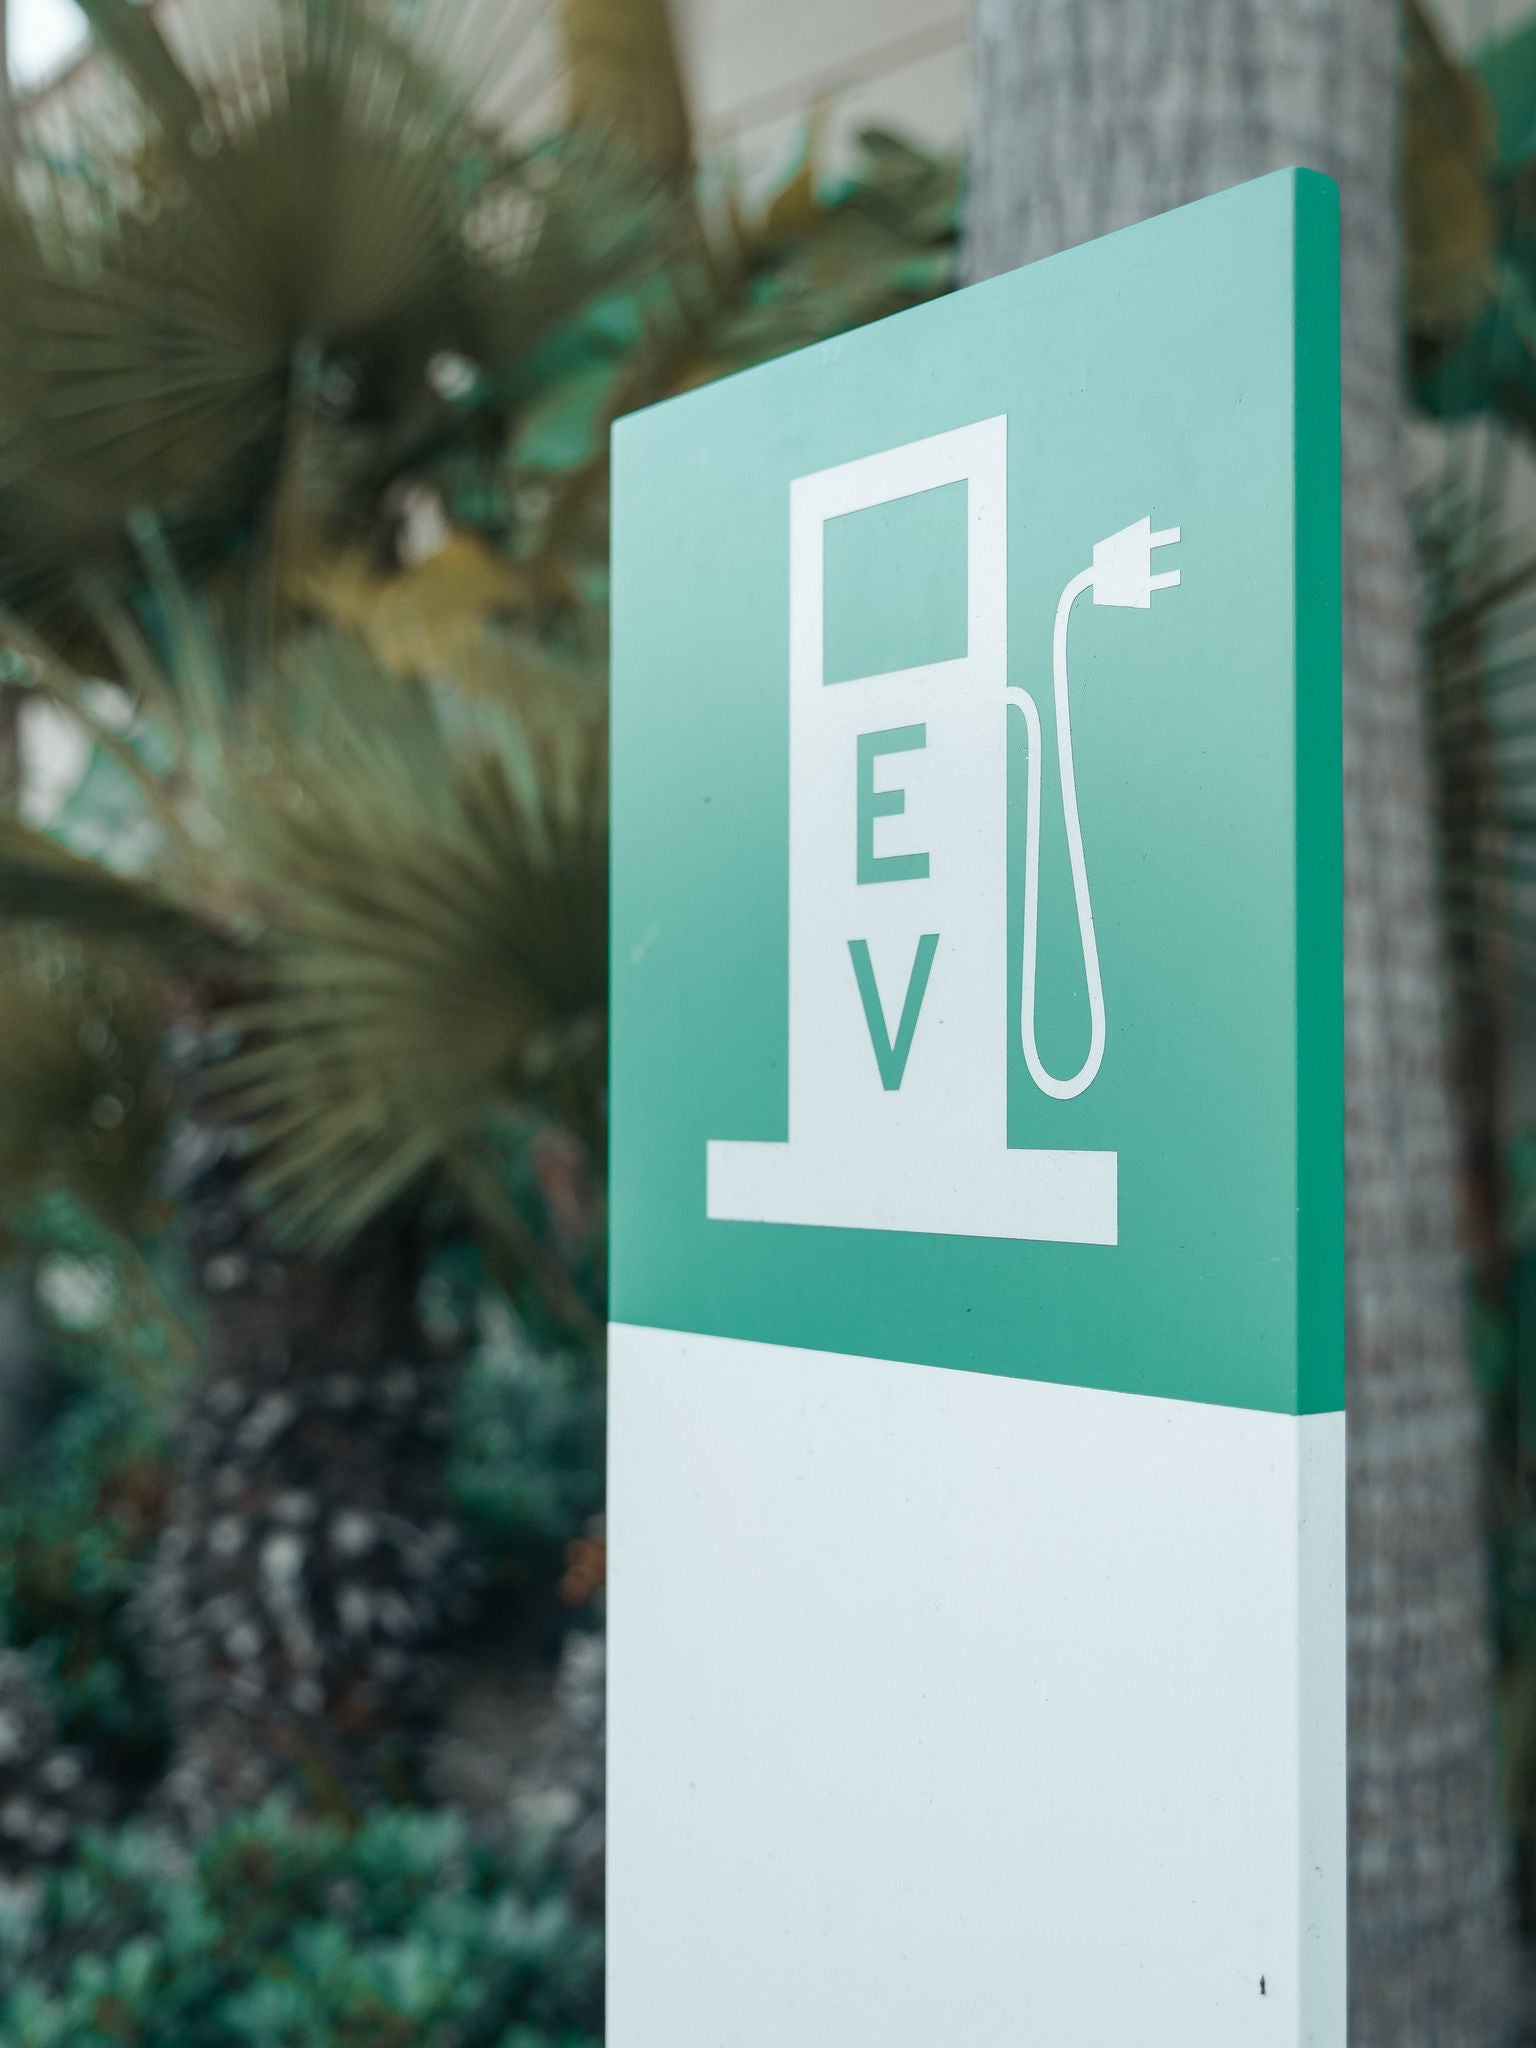 EV charging station symbol